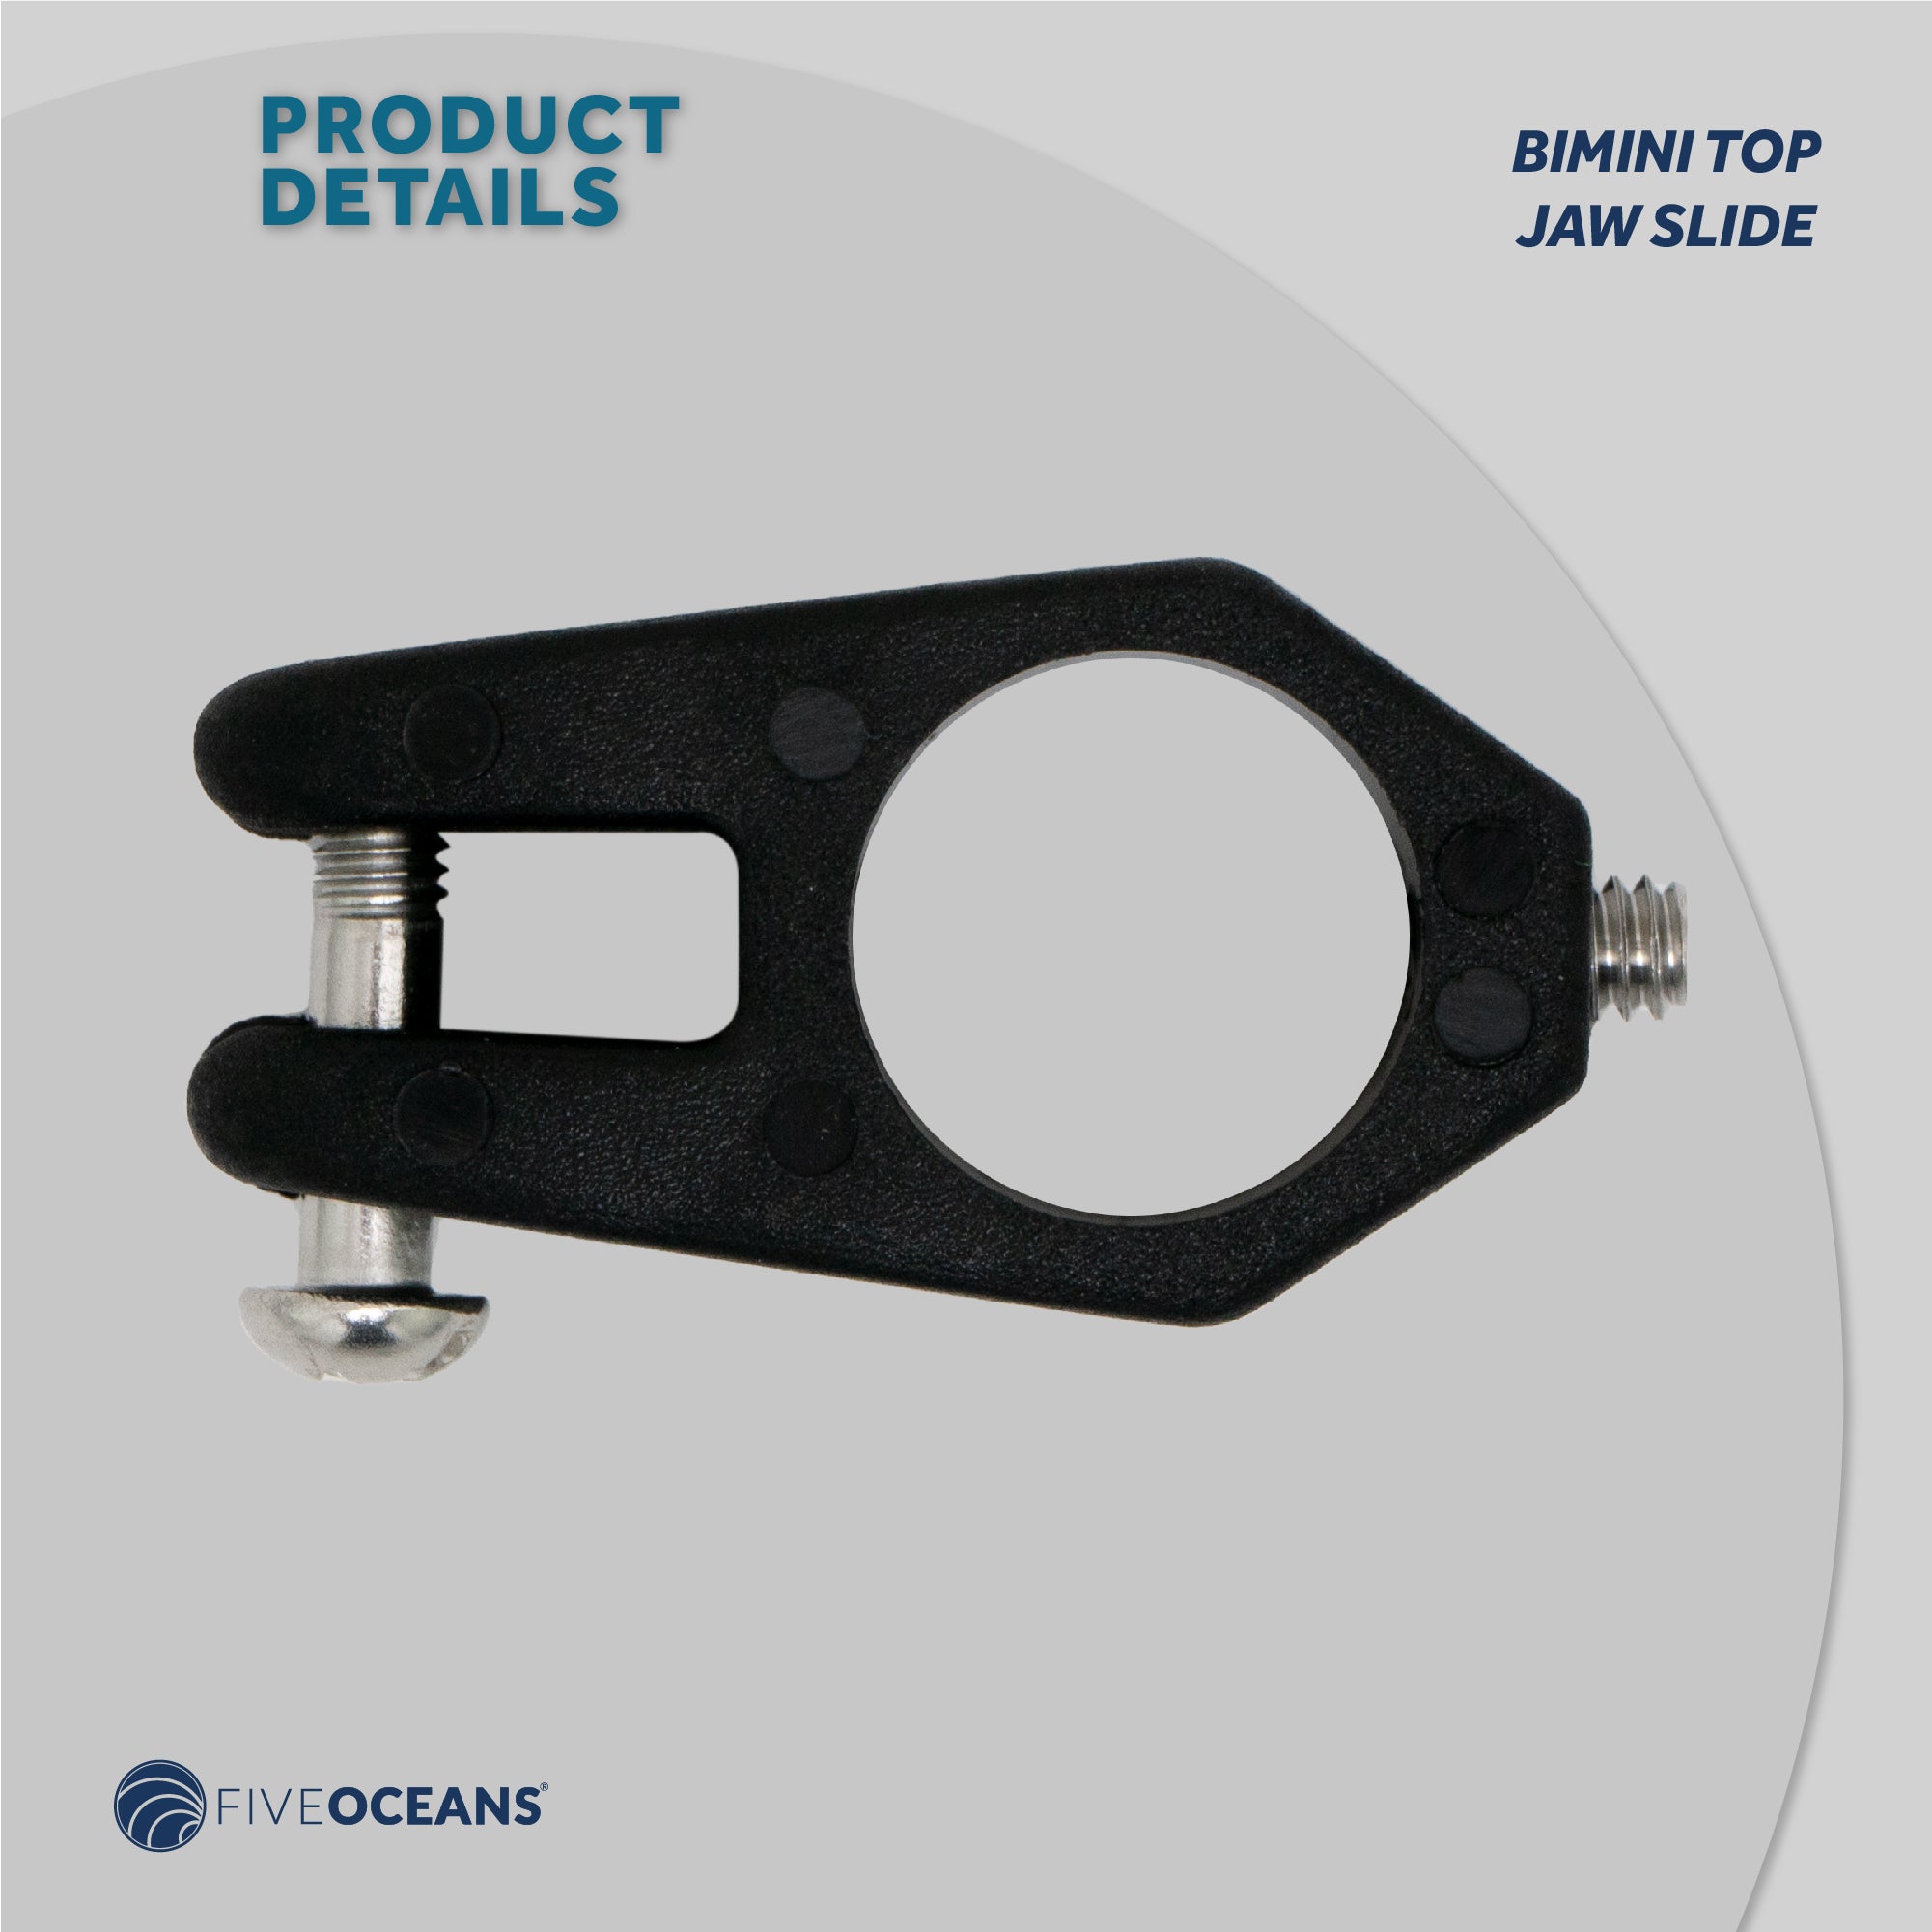 Bimini Top Jaw Slide, 7/8" Black Nylon, 2-Pack - FO3846-M2